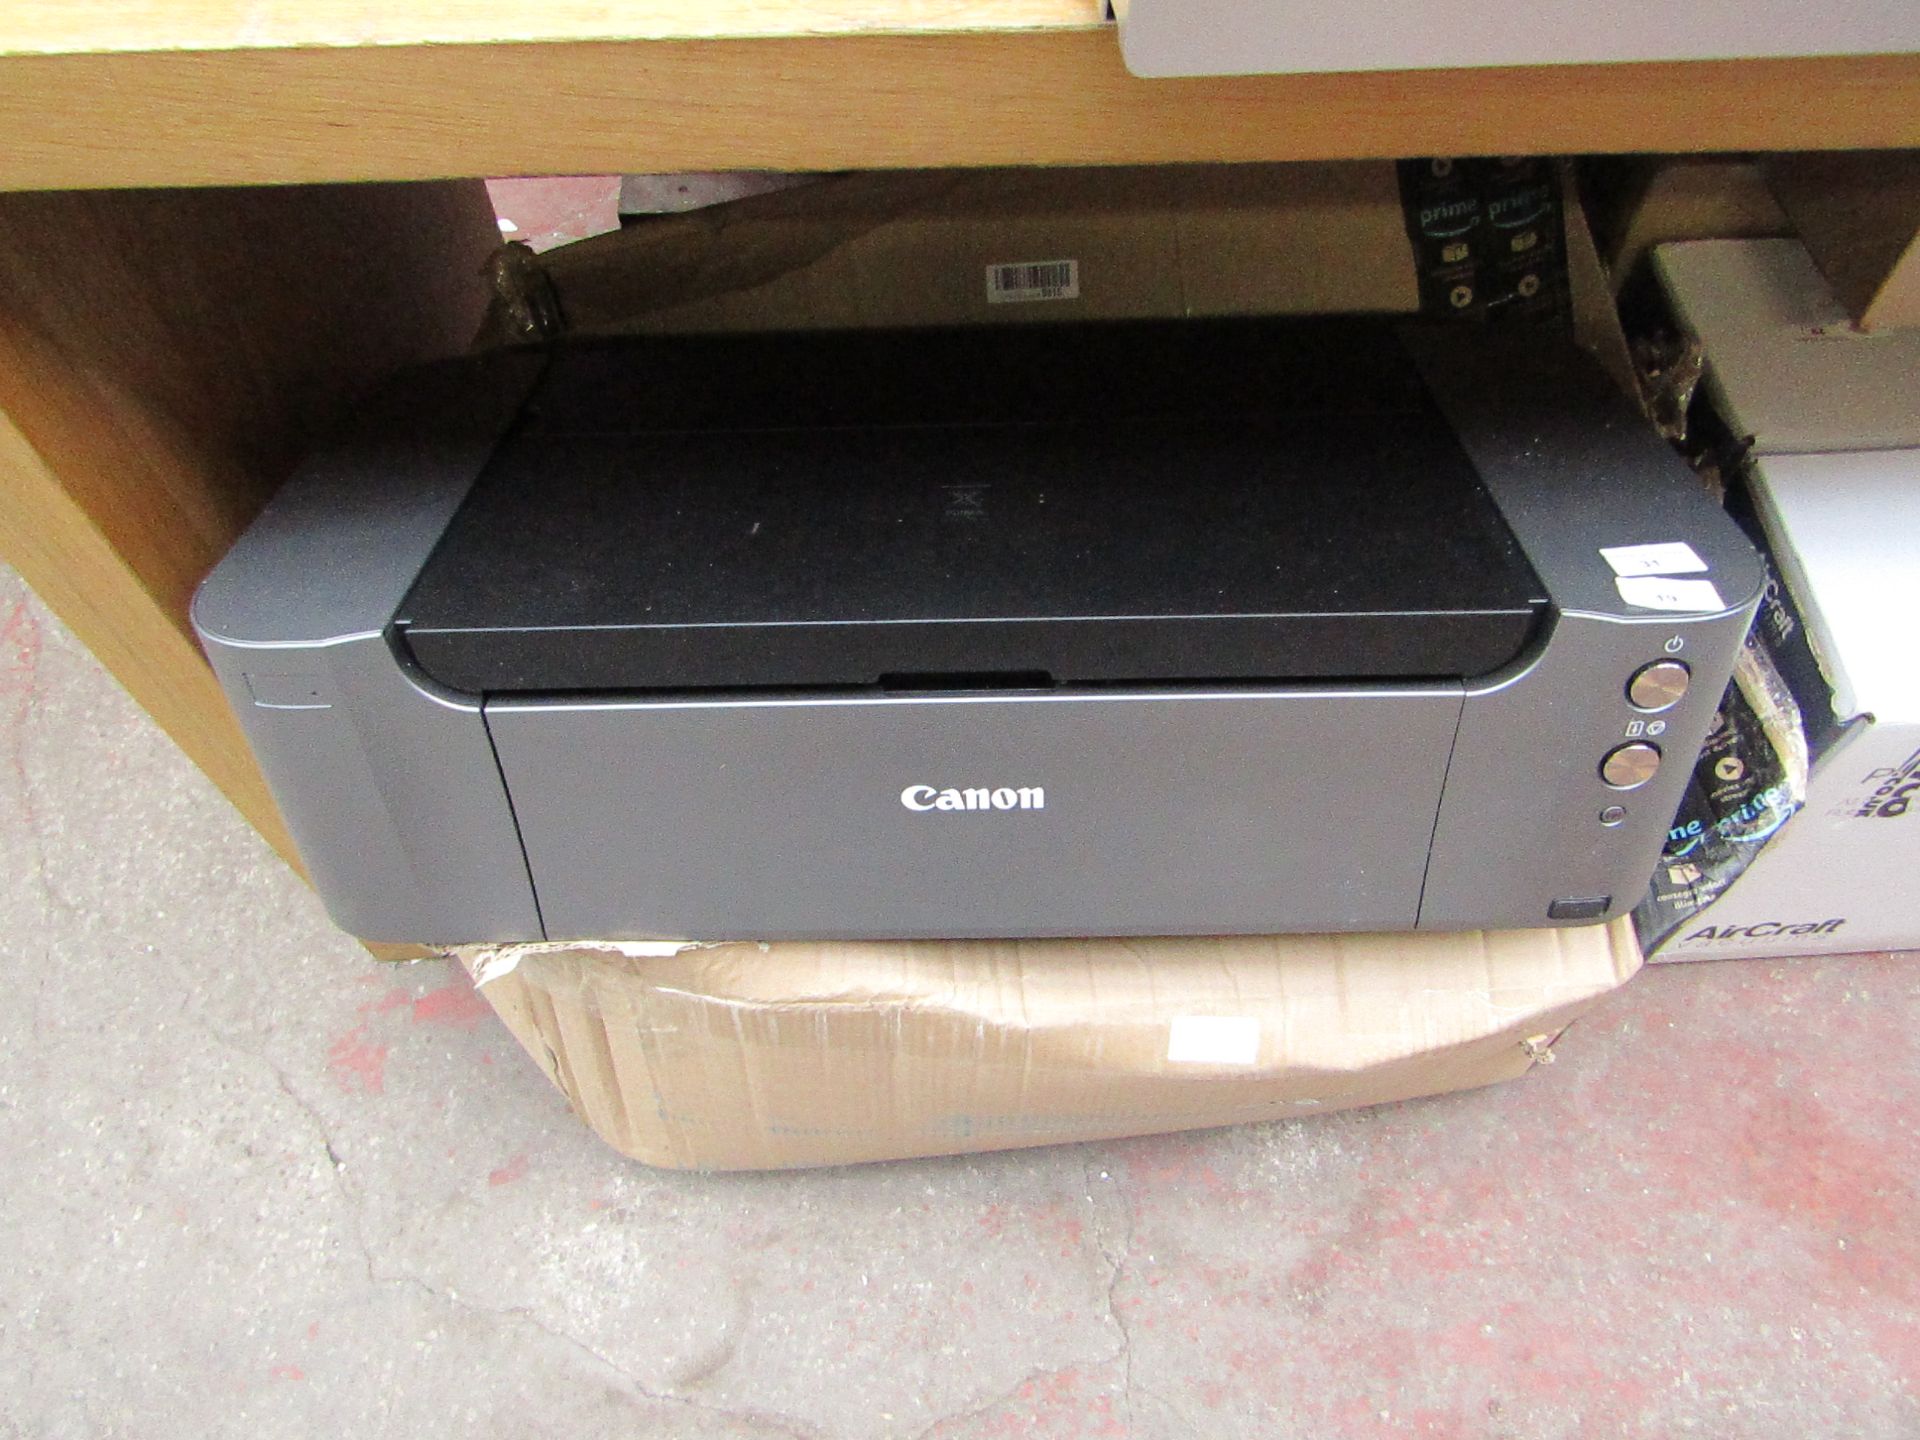 Canon PIXMA PRO-10S Wireless Inkjet Photo Printer - Colour black&grey, untested and boxed. RRP Circa